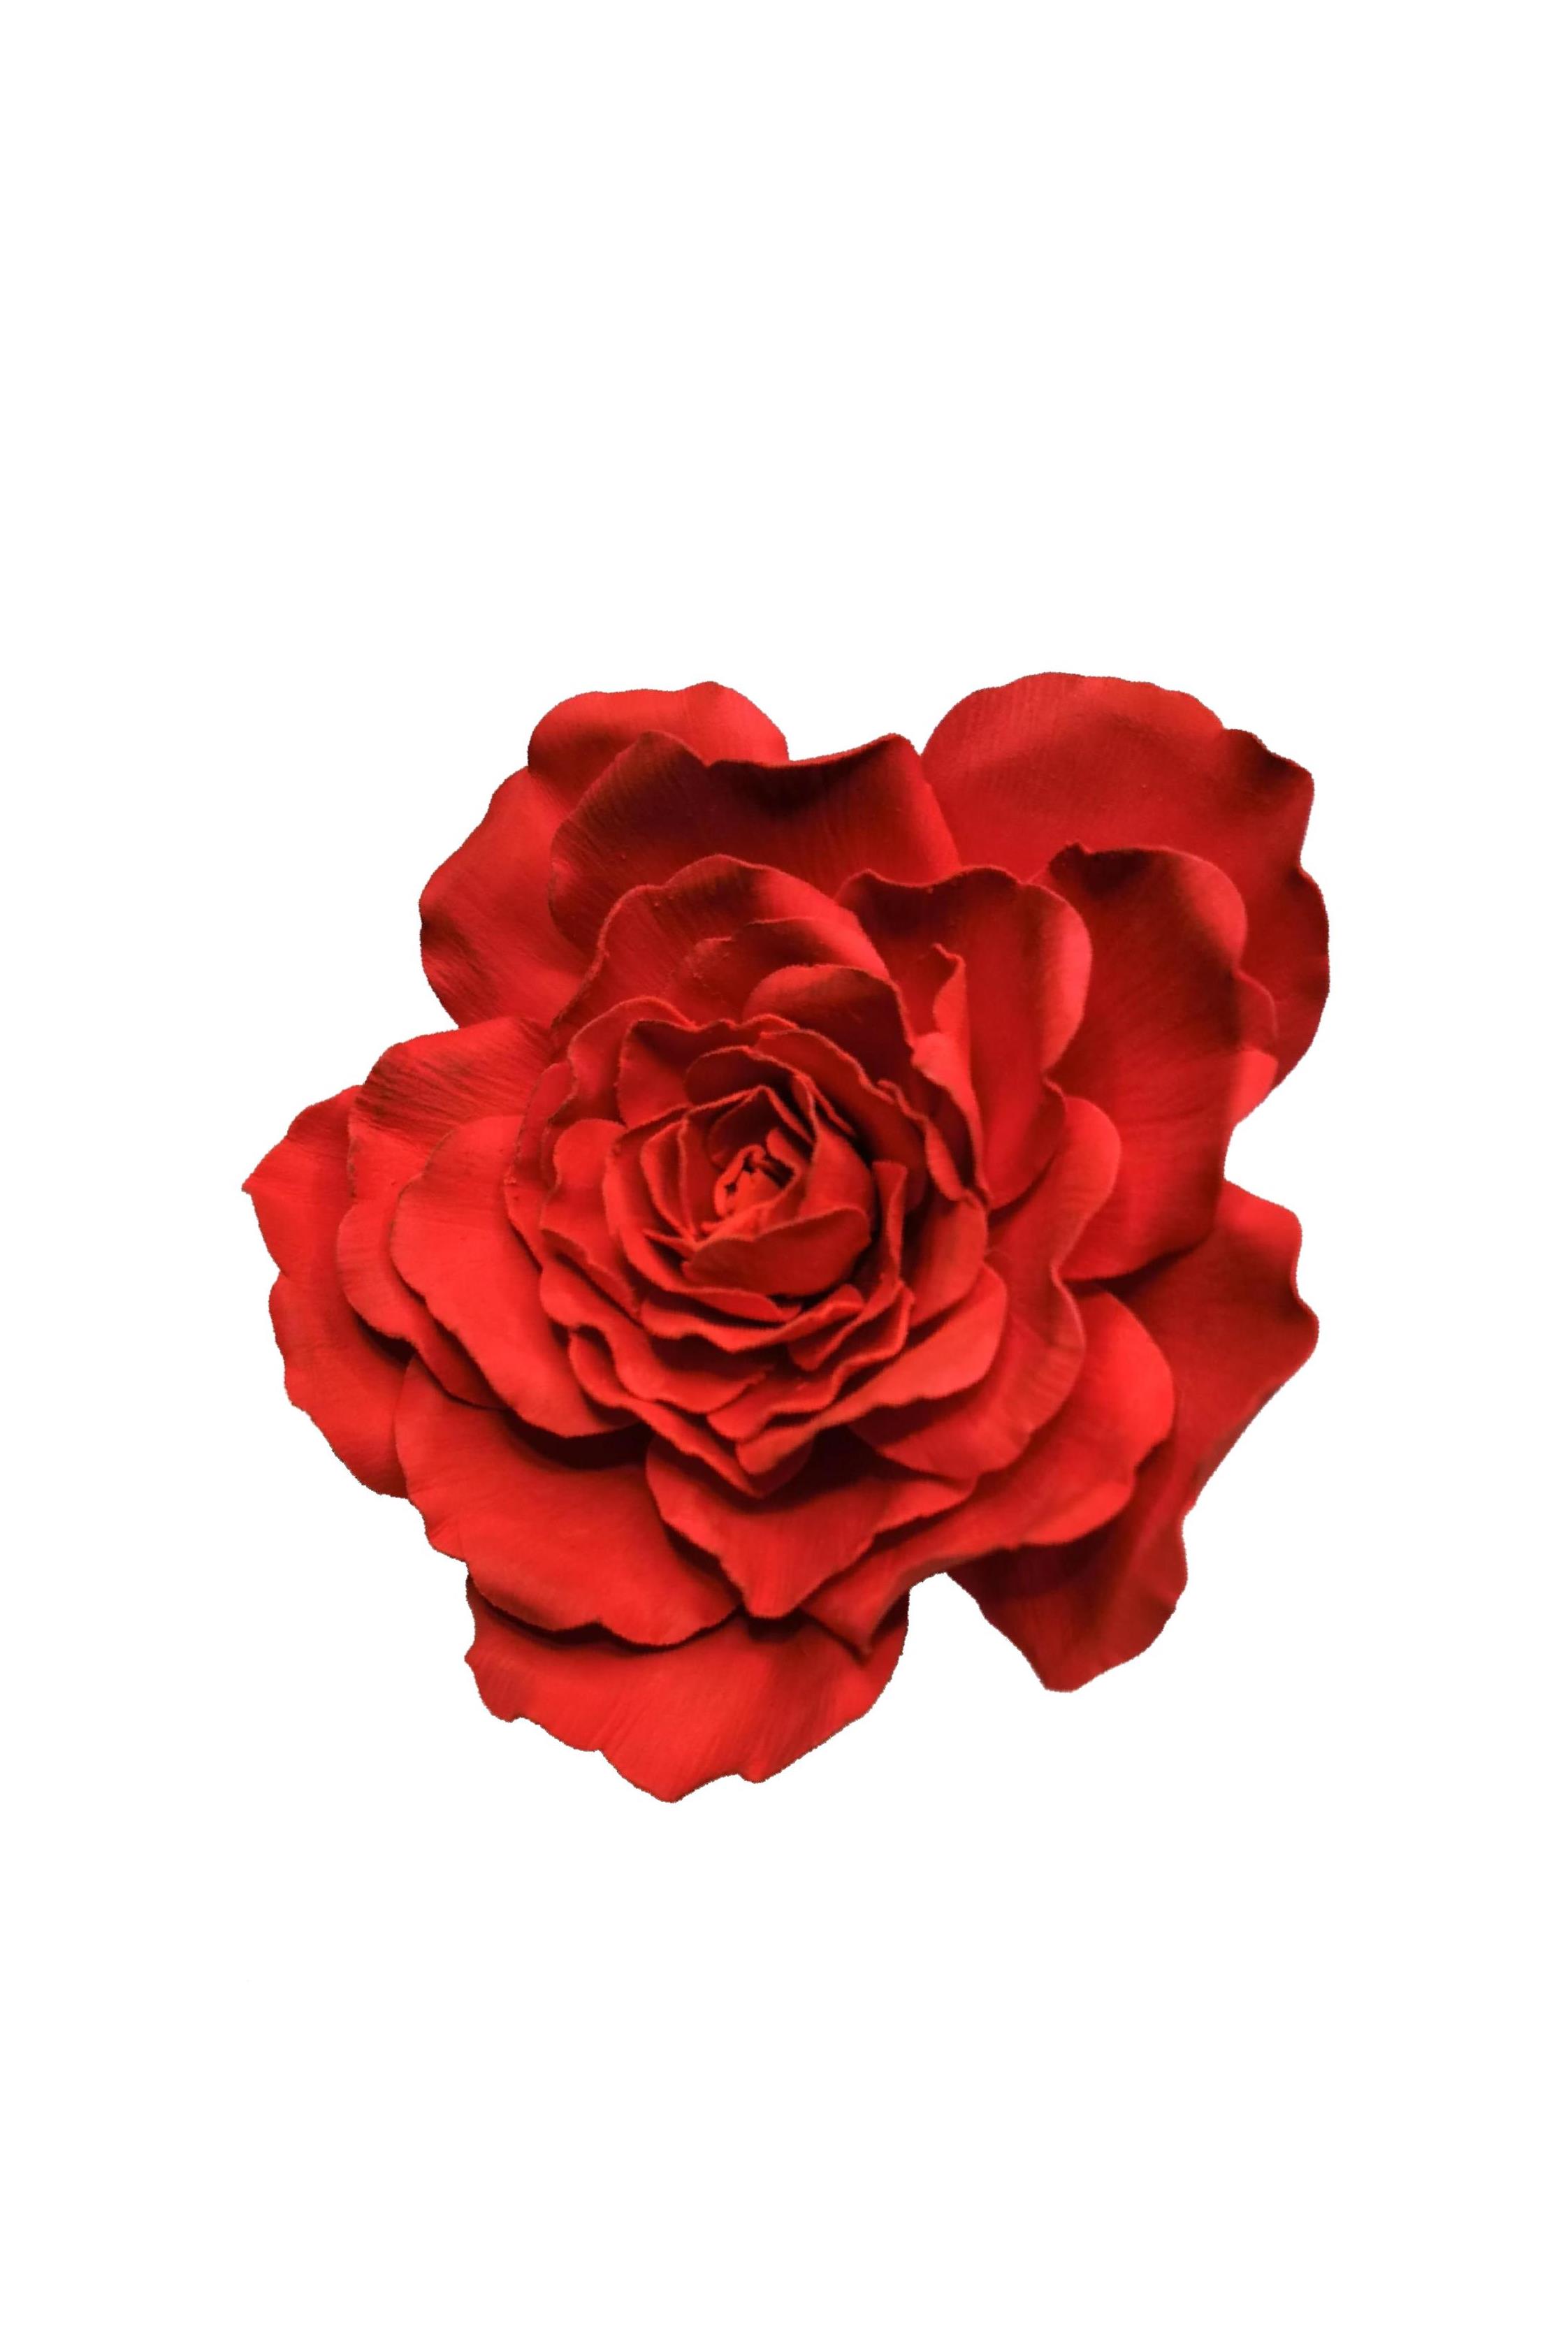 rosa rossa per galleria - Copia